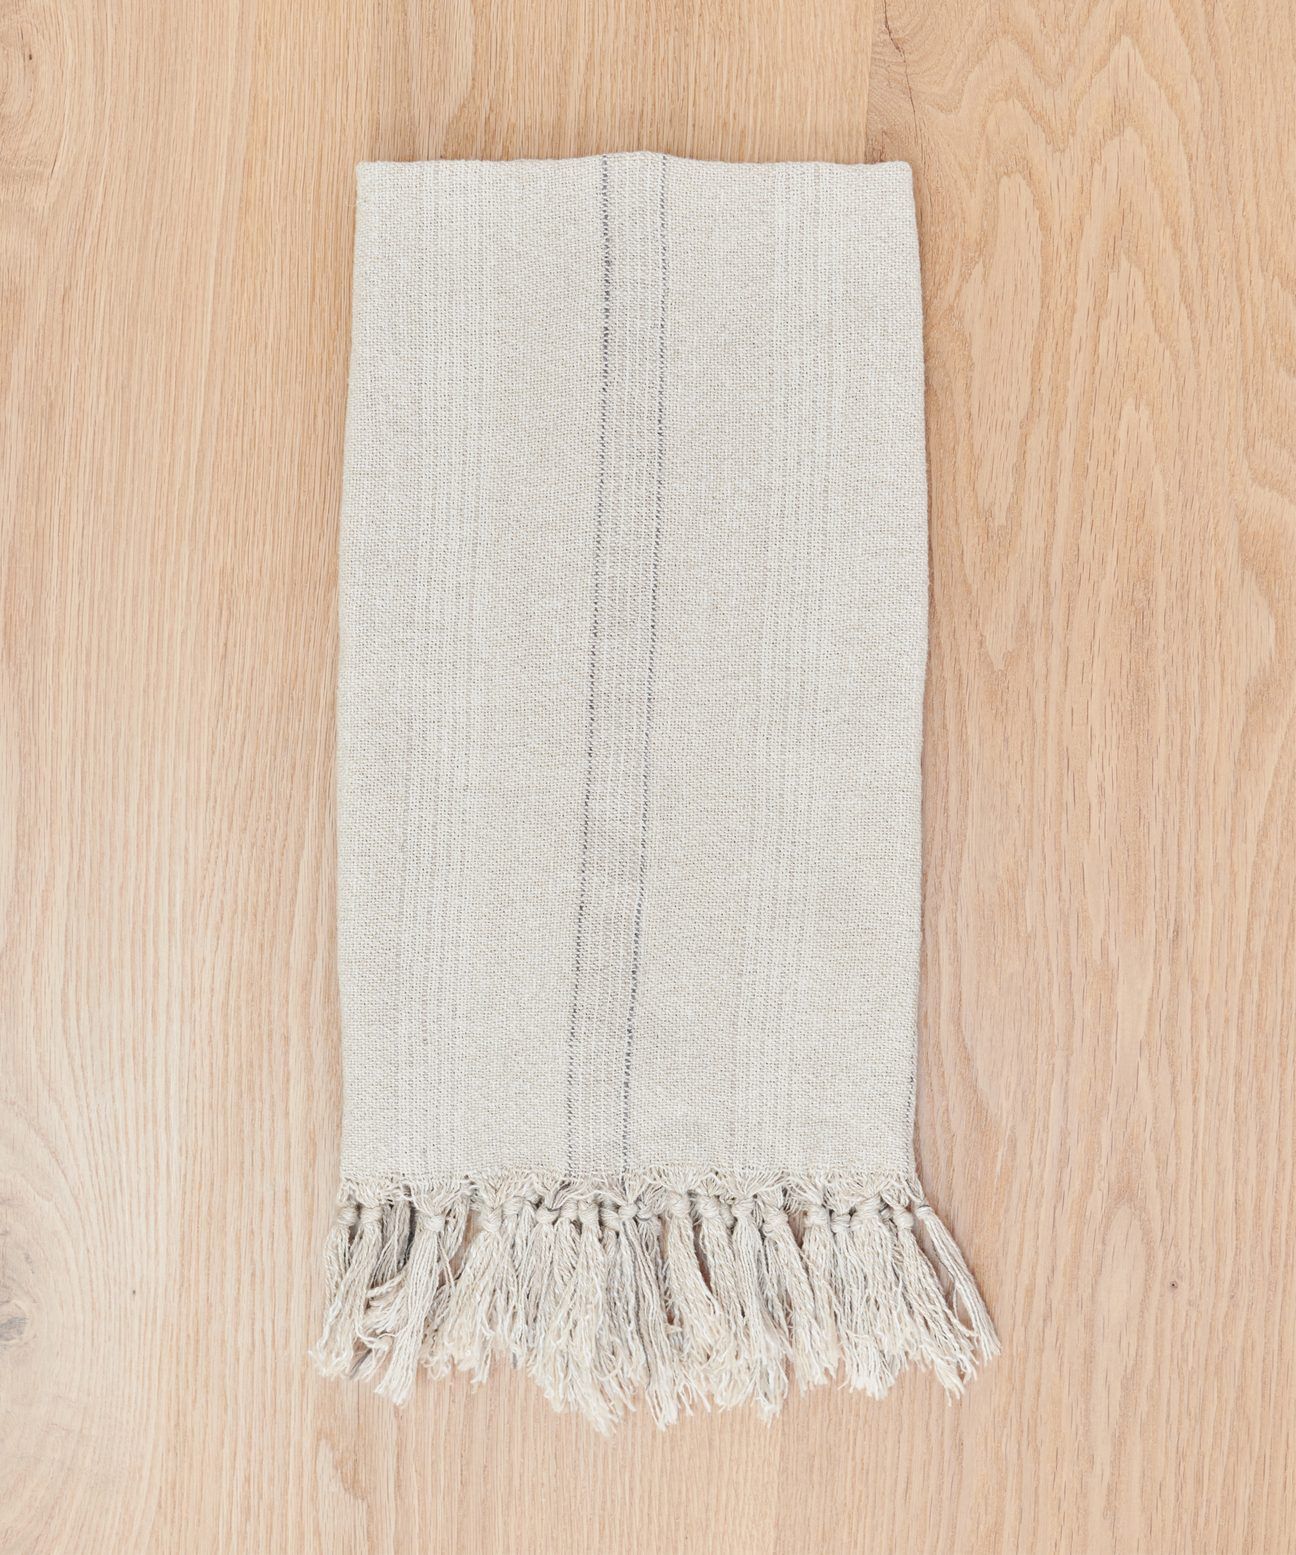 Jackson Hand Towel - Natural Stripe | Jenni Kayne | Jenni Kayne